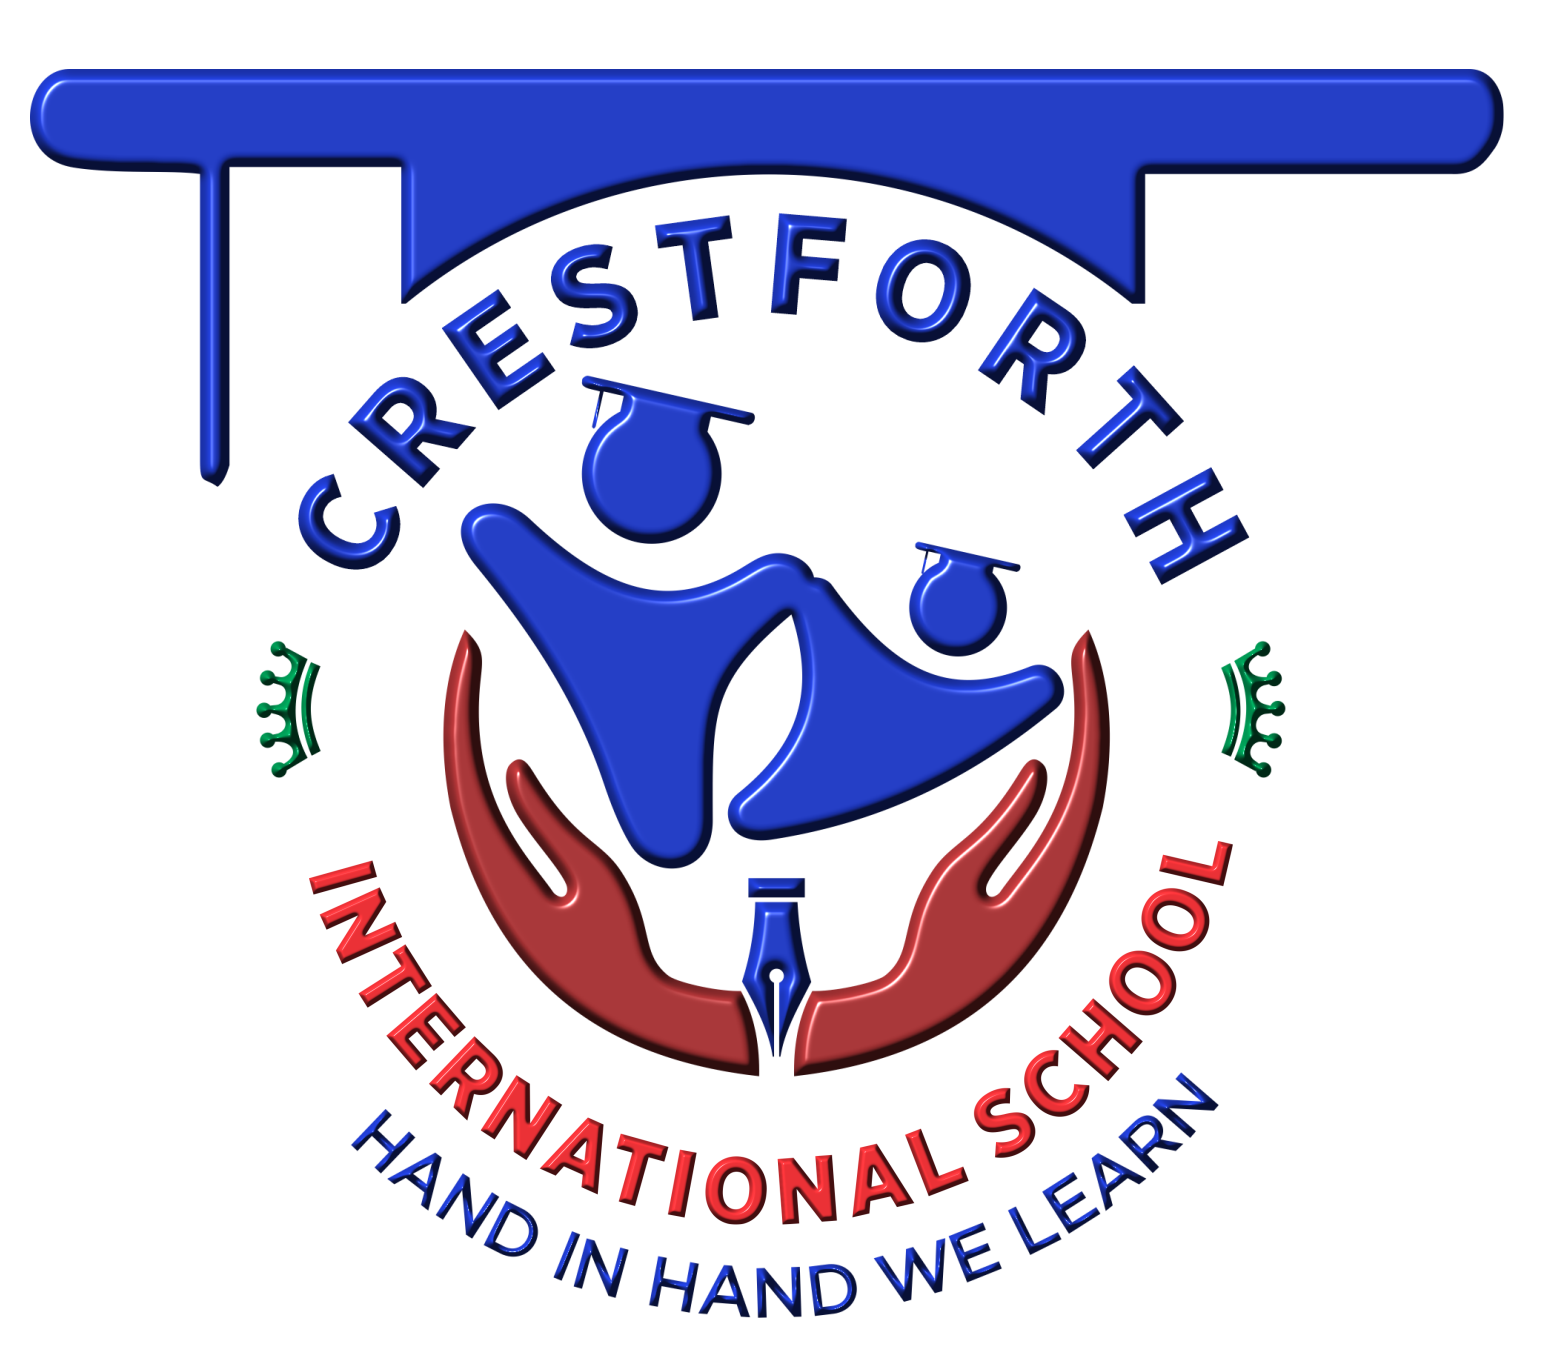 Crestforth International School